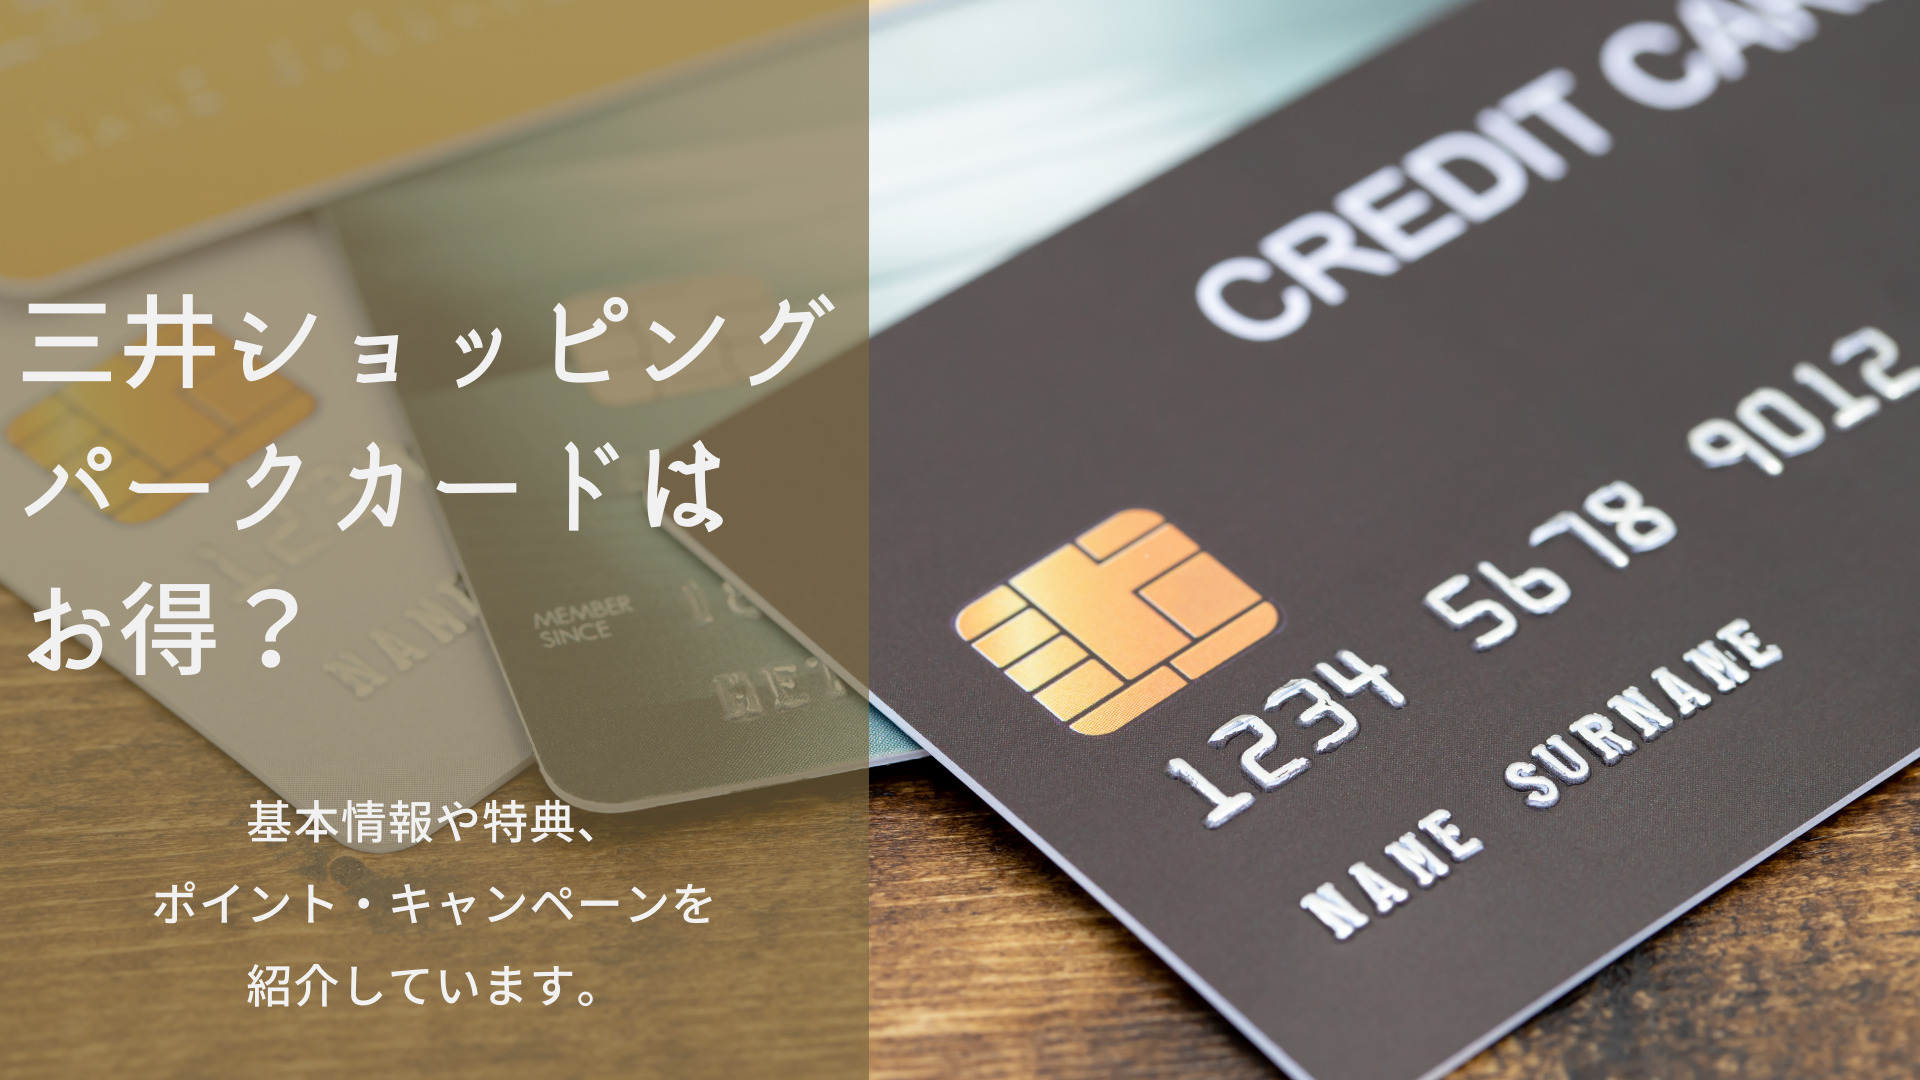 三井ショッピングパークカードはお得 特典やポイント キャンペーンを紹介 ネットマイルマガジン クレジットカードやおすすめのアプリなど生活を豊かにする情報をお届け